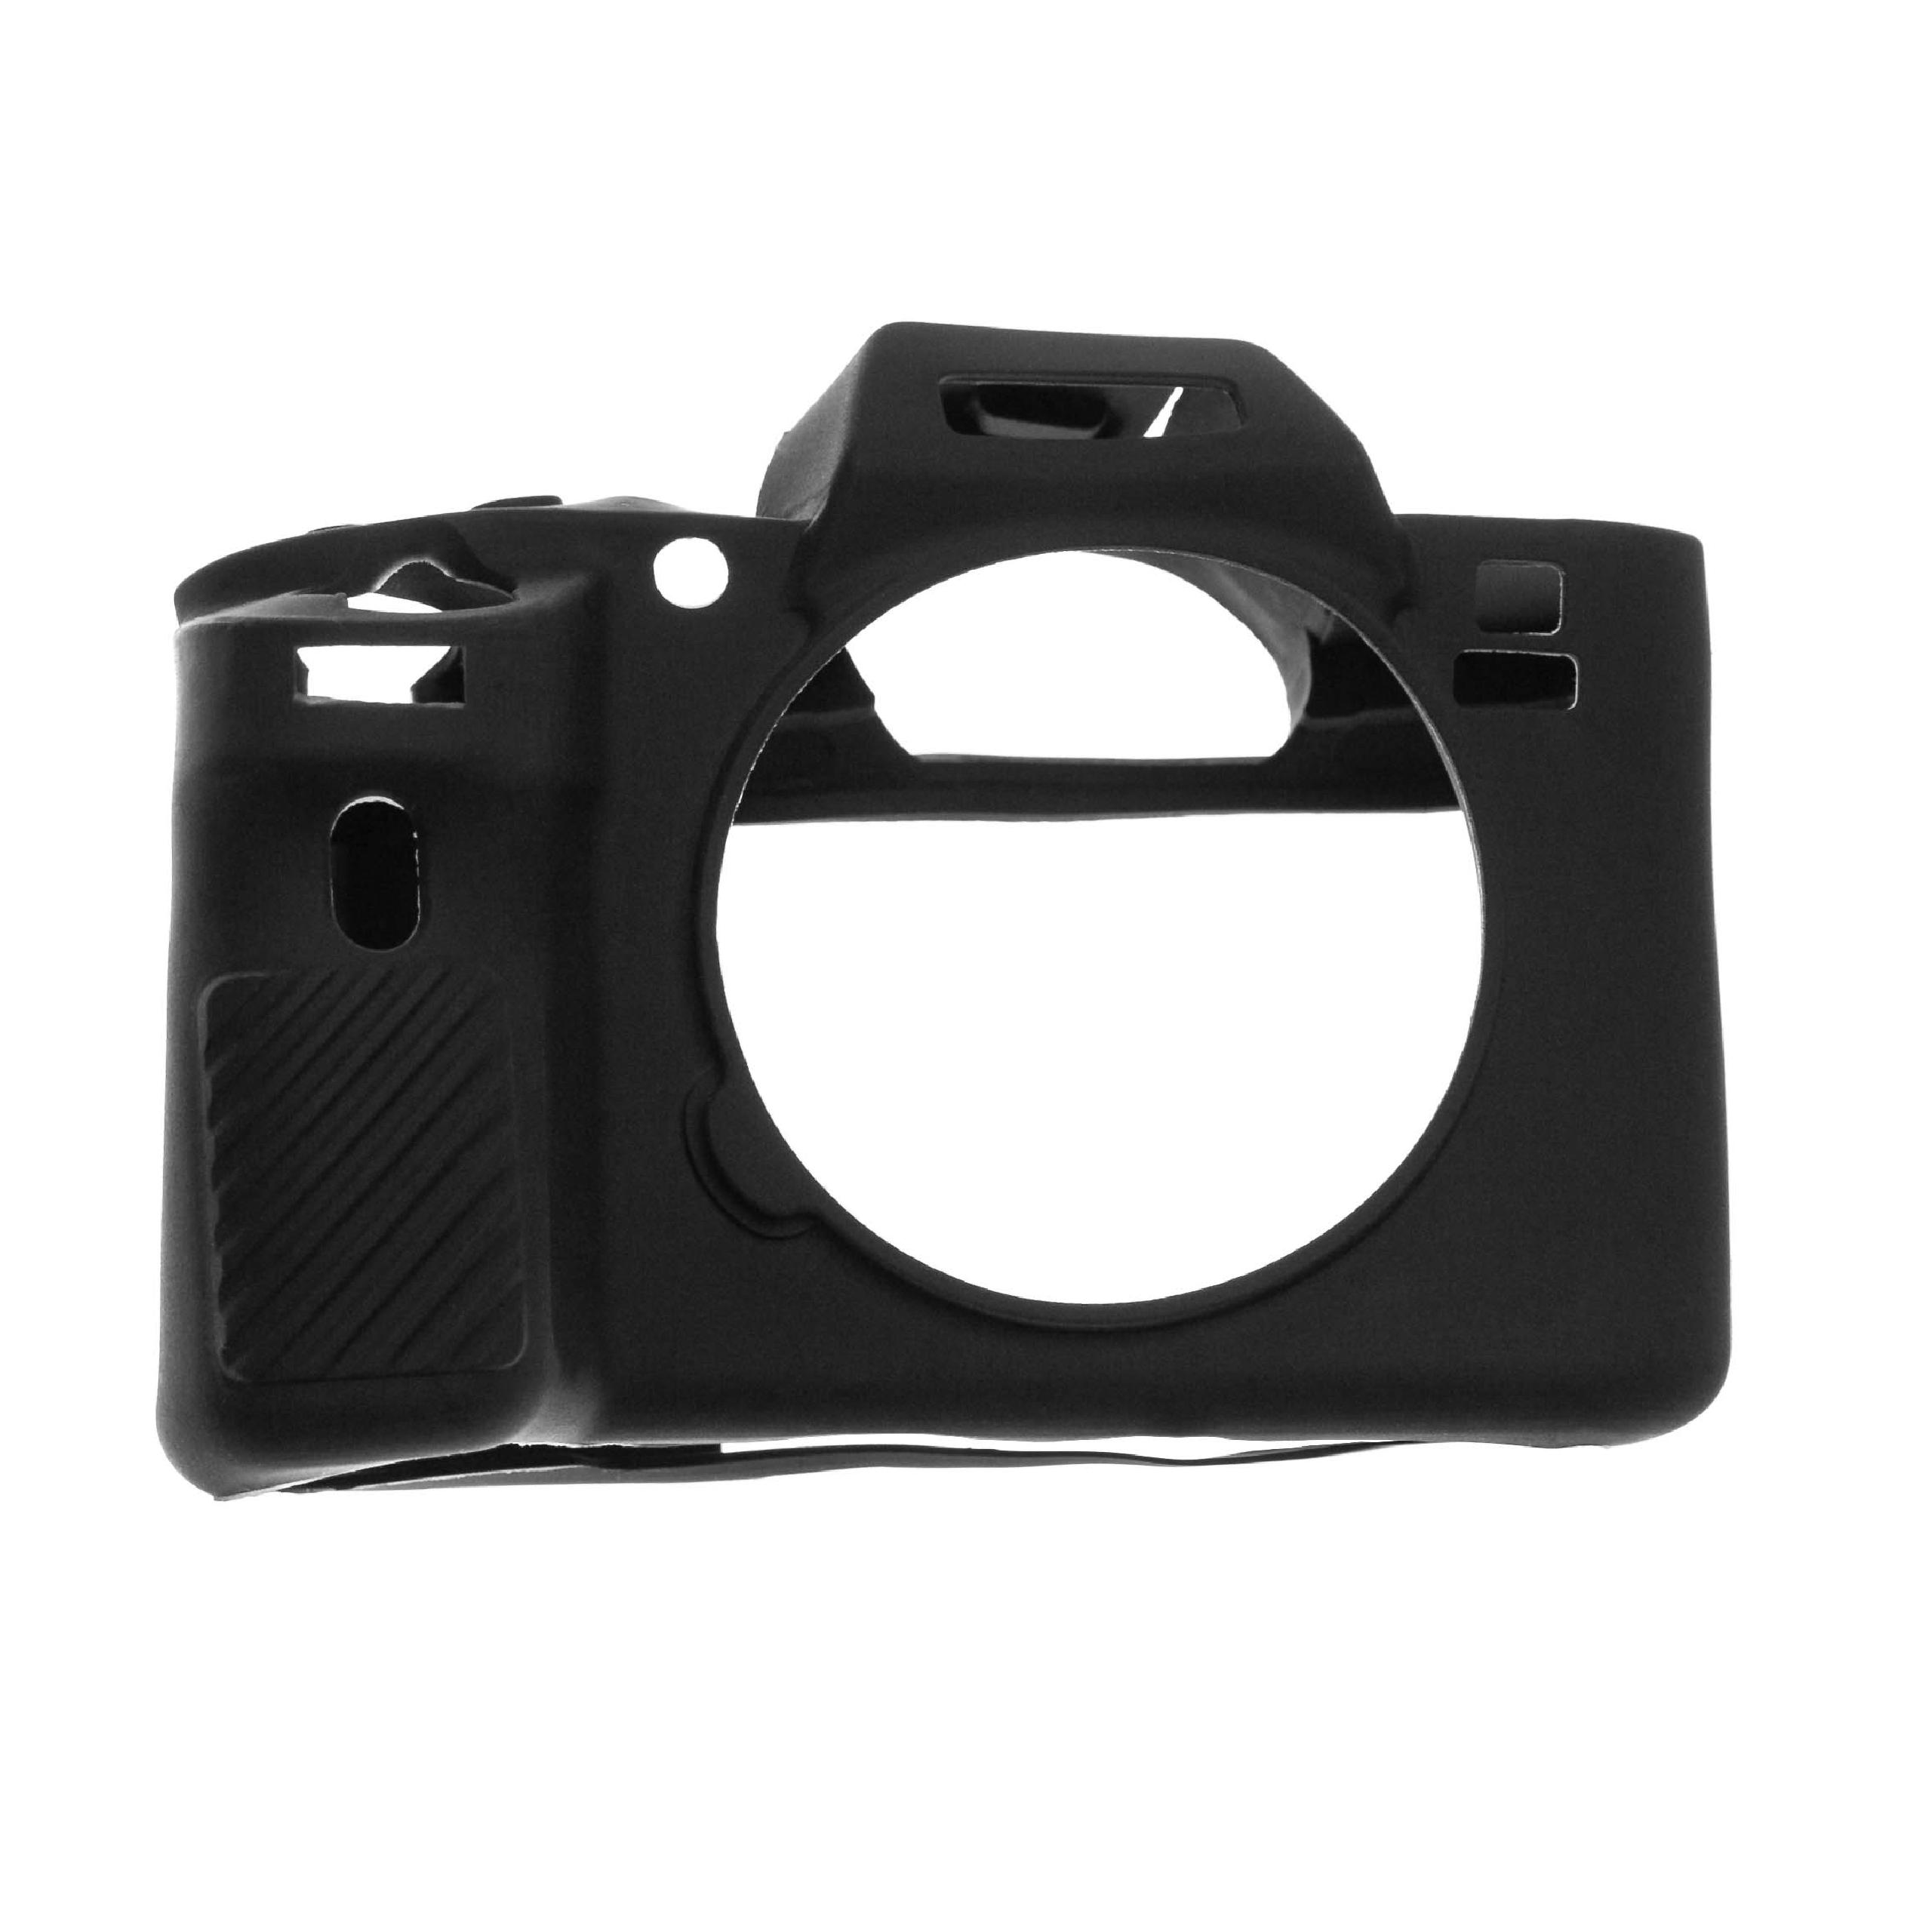 Étui de protection pour appareils photo Sony Alpha 7R II, 7S II - silicone, noir